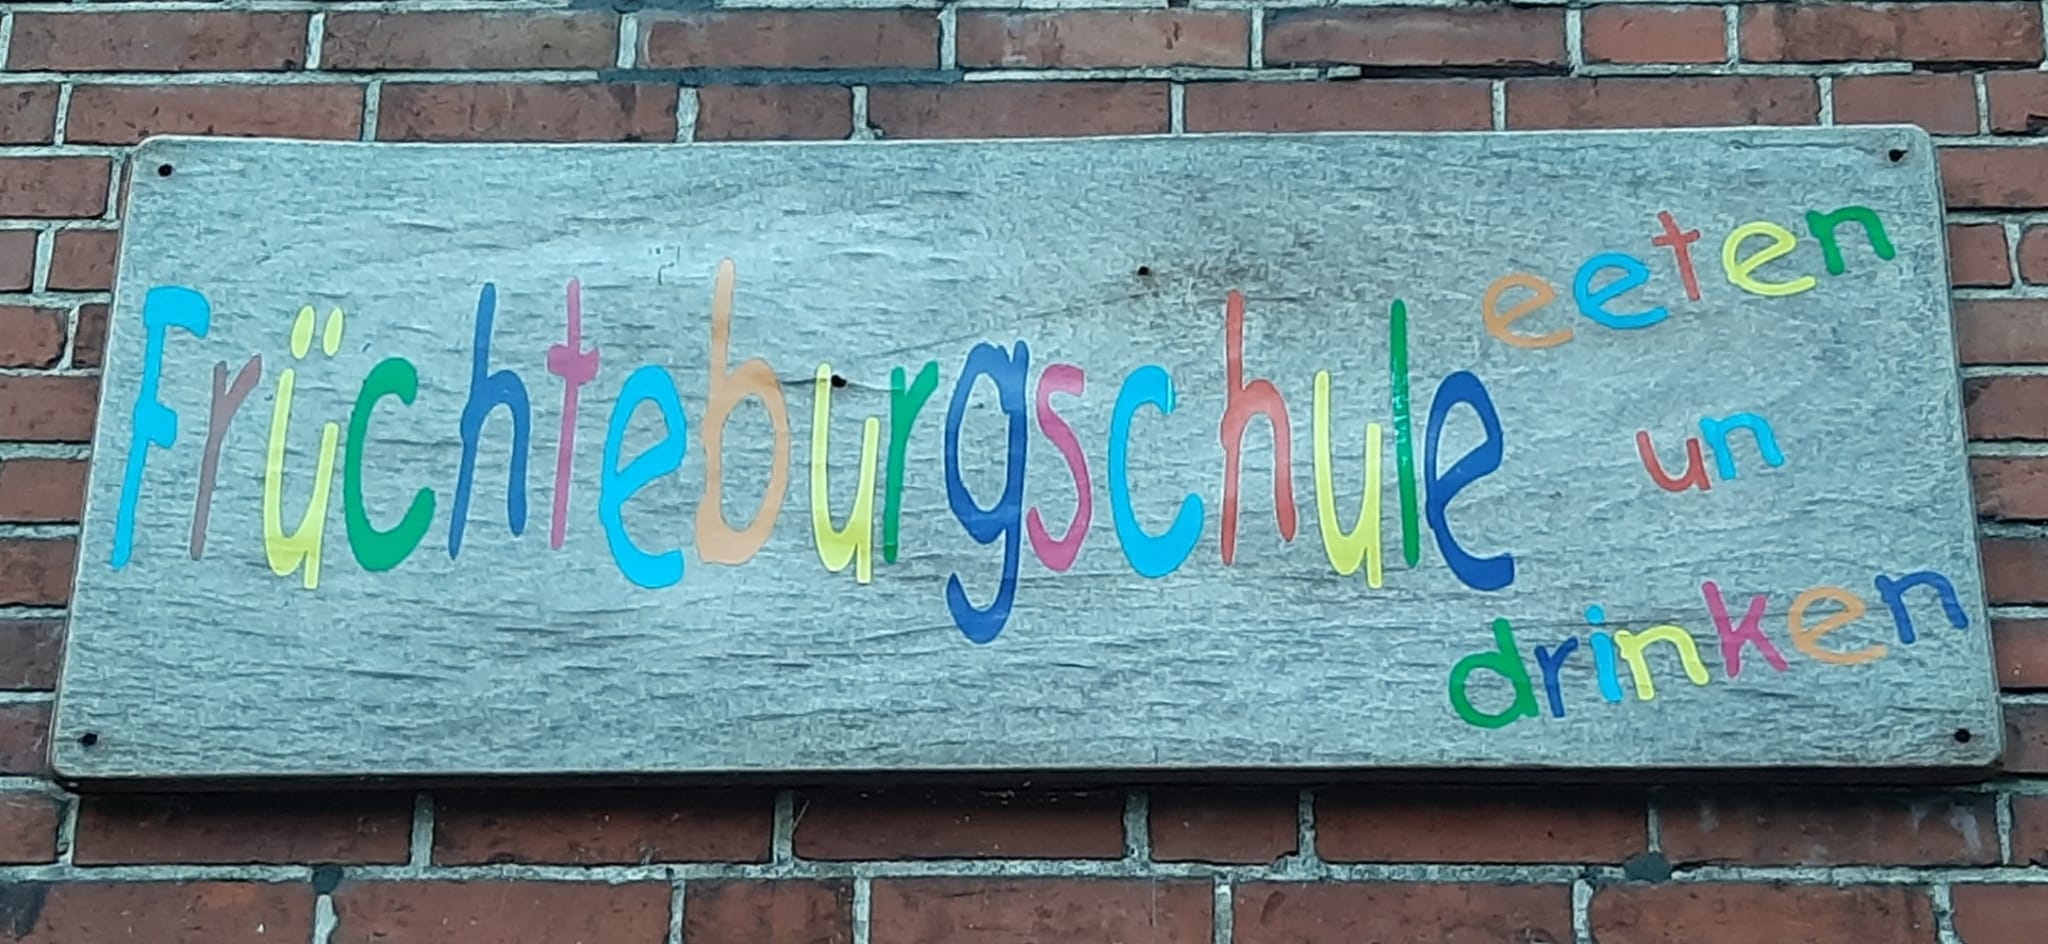 Früchteburgschule